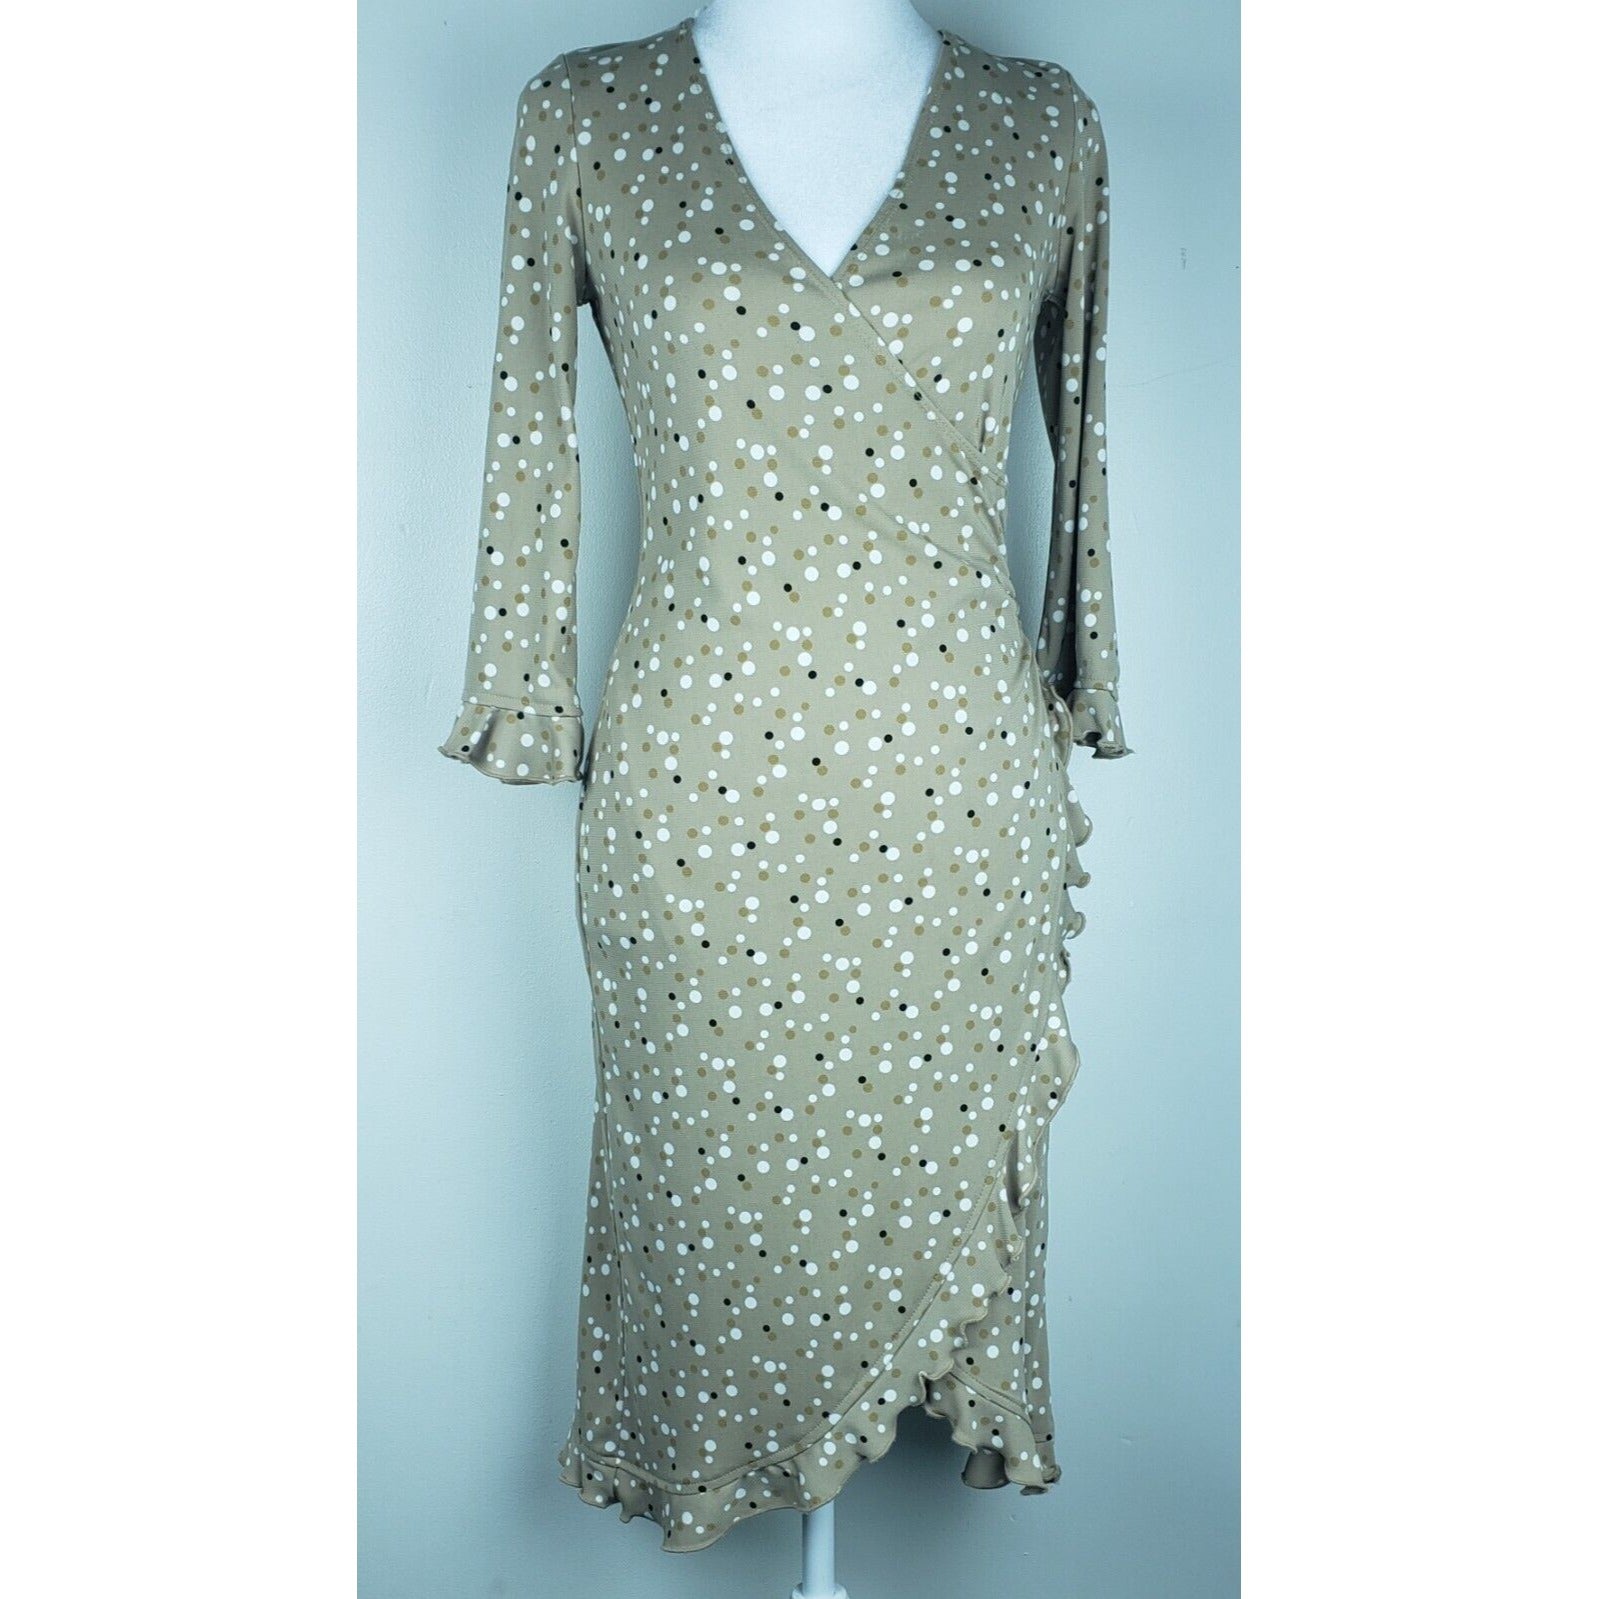 Jonathan Martin Tan White Polka Dot Dress 3/4 Sleeves Slitted Skirt Size Small S